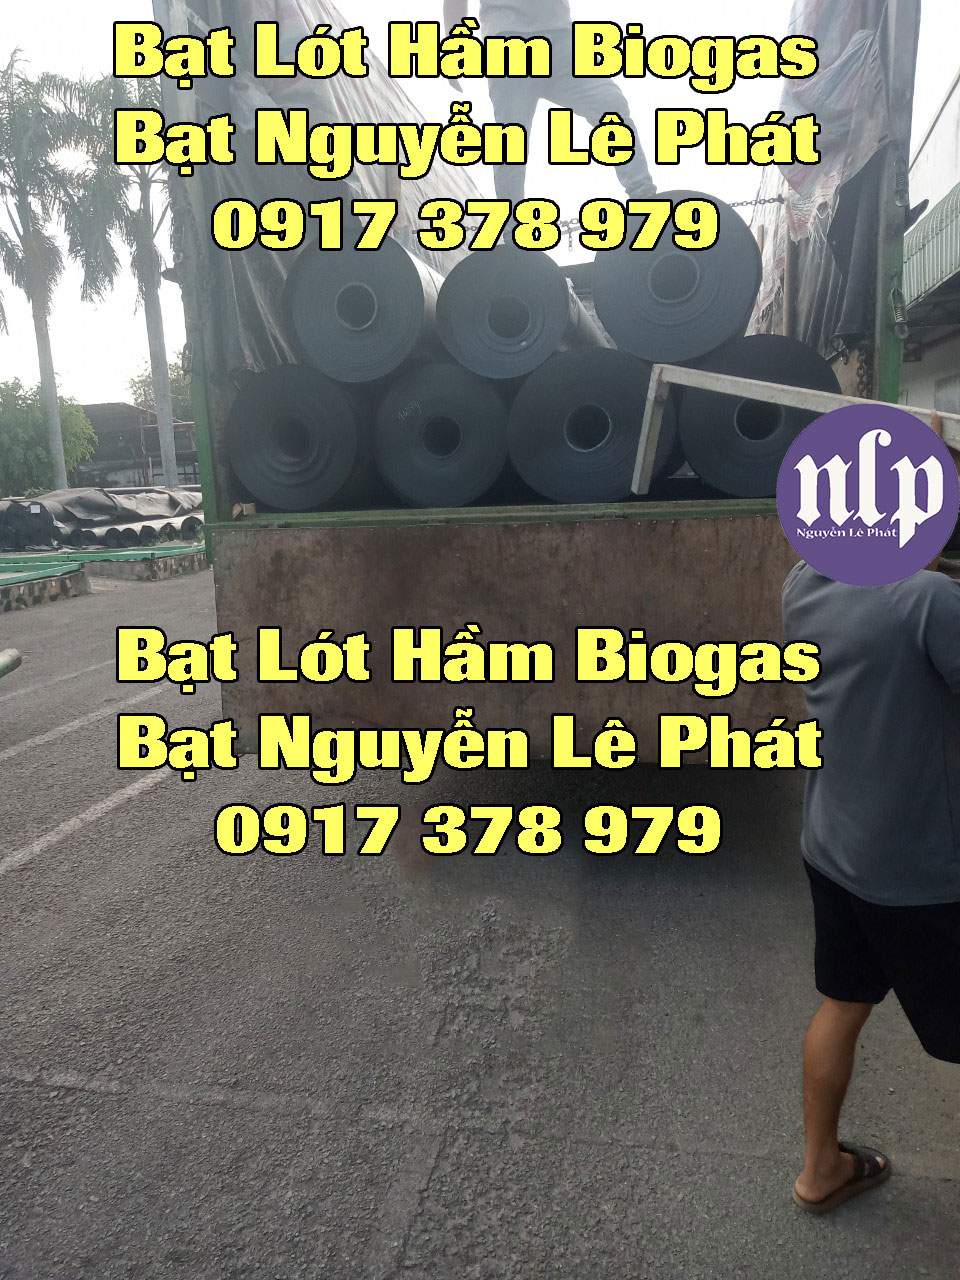 bat-lot-ham-biogas1.jpg